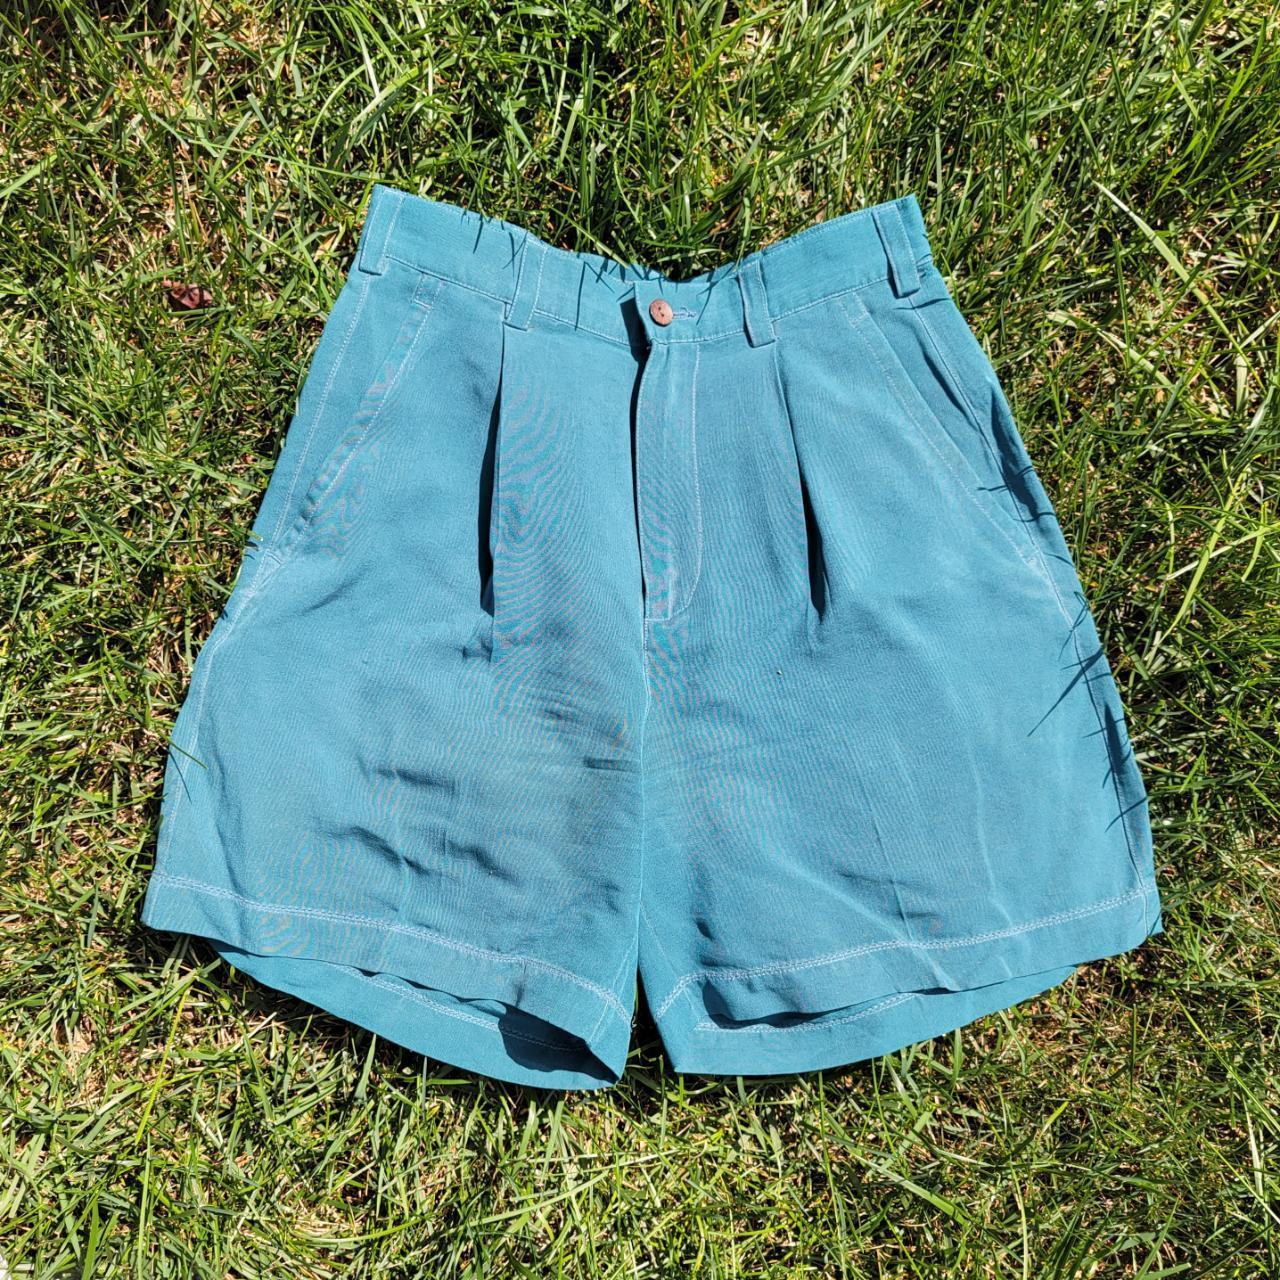 Tommy Bahama vintage silk shorts in teal i love... - Depop